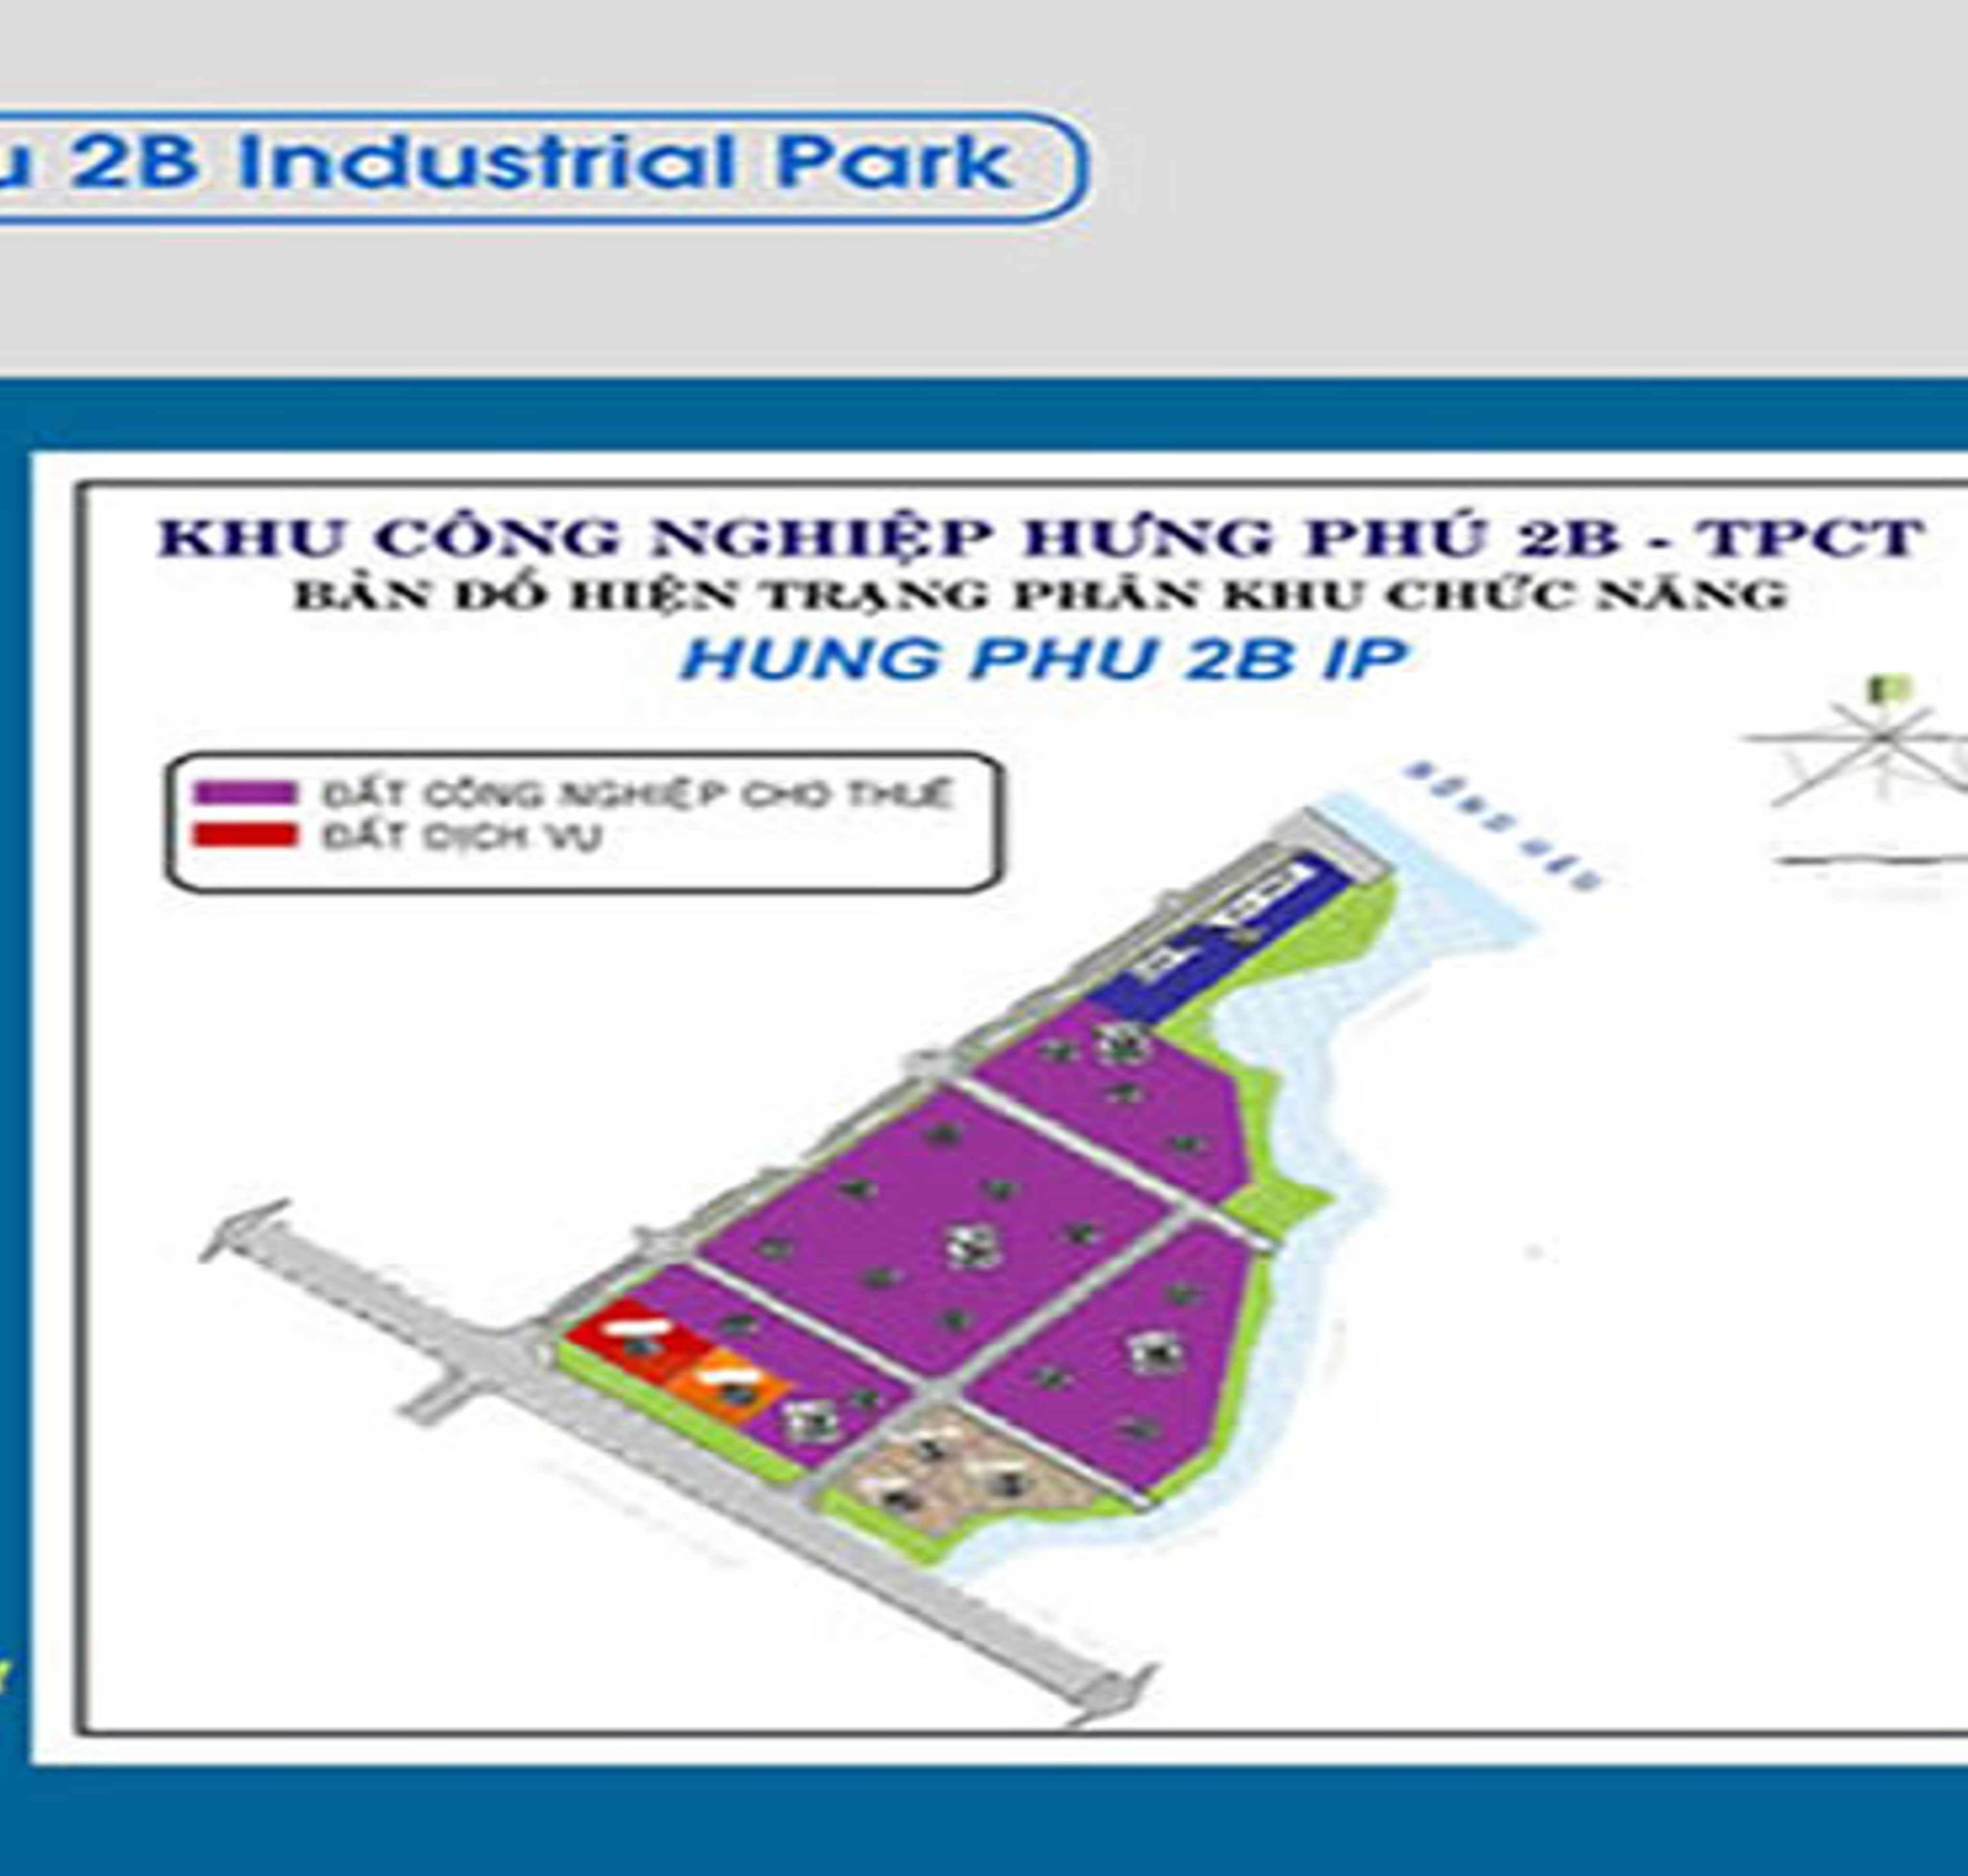 Hung Phu 2B Industrial Park